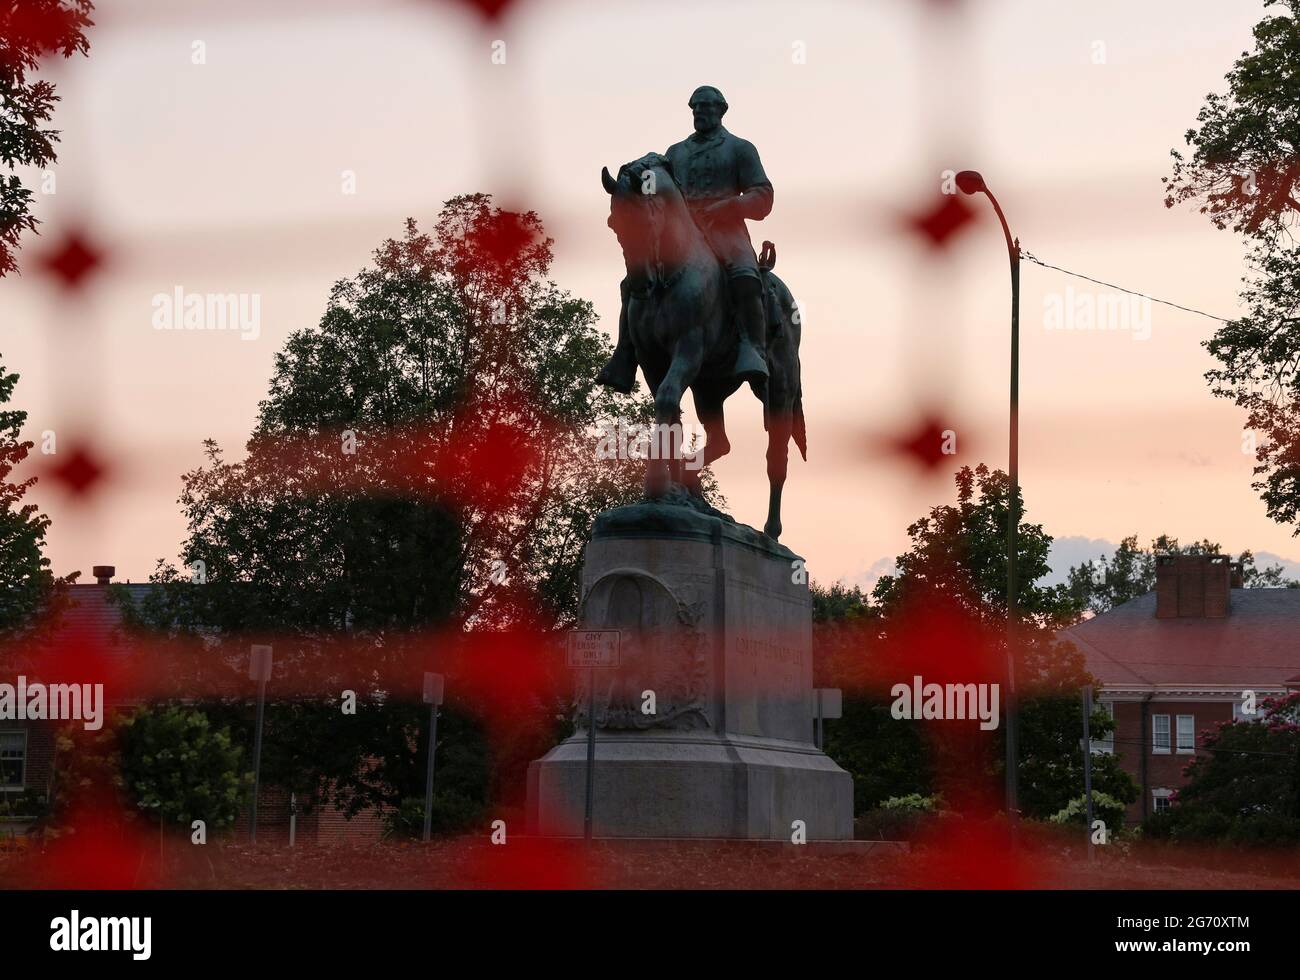 Una estatua del general confederado Robert E. Lee está en Charlottesville, Virginia, EE.UU., el día antes de su retirada programada después de años de batalla legal sobre el monumento contencioso, 9 de julio de 2021. REUTERS/Evelyn Hockstein Foto de stock